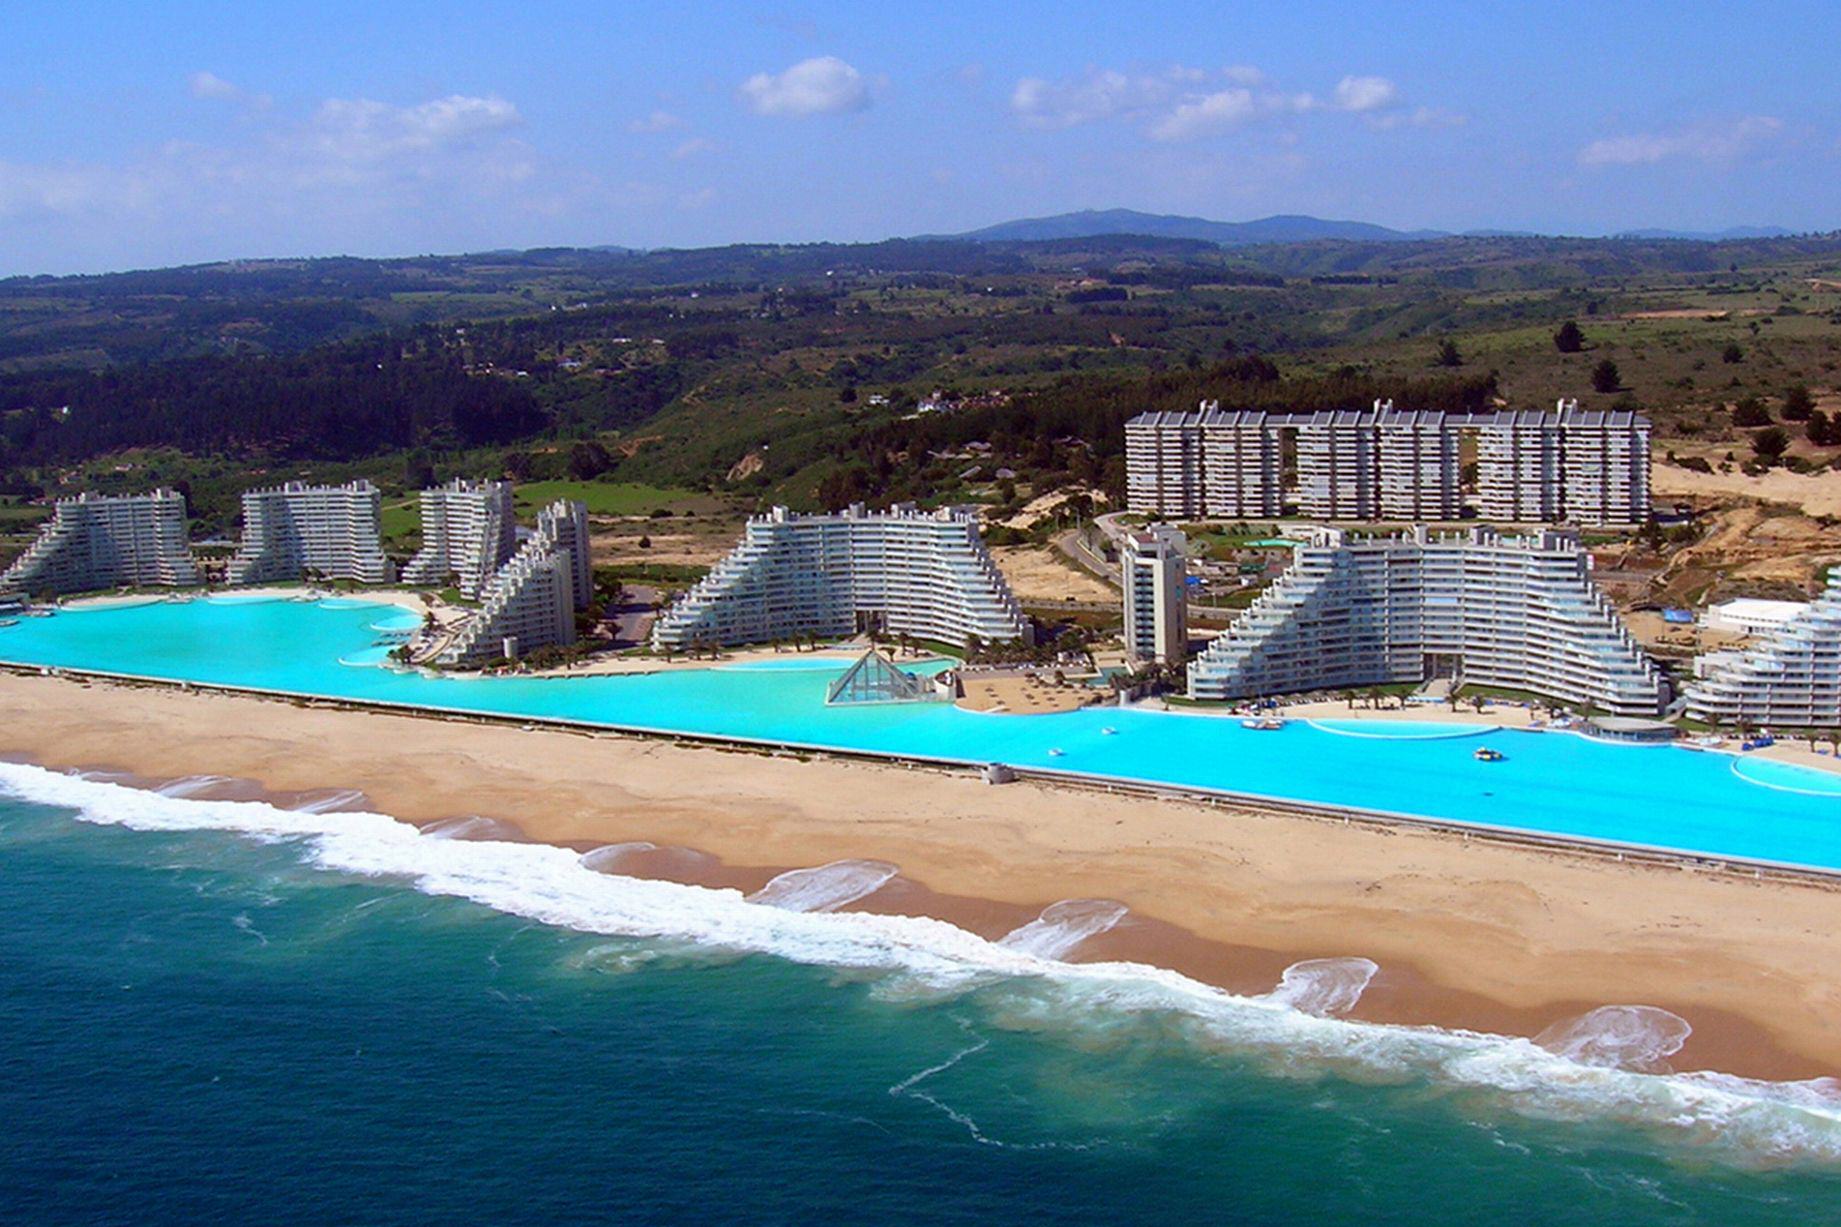 Первый бассейн в мире. Самый большой бассейн в мире San Alfonso.